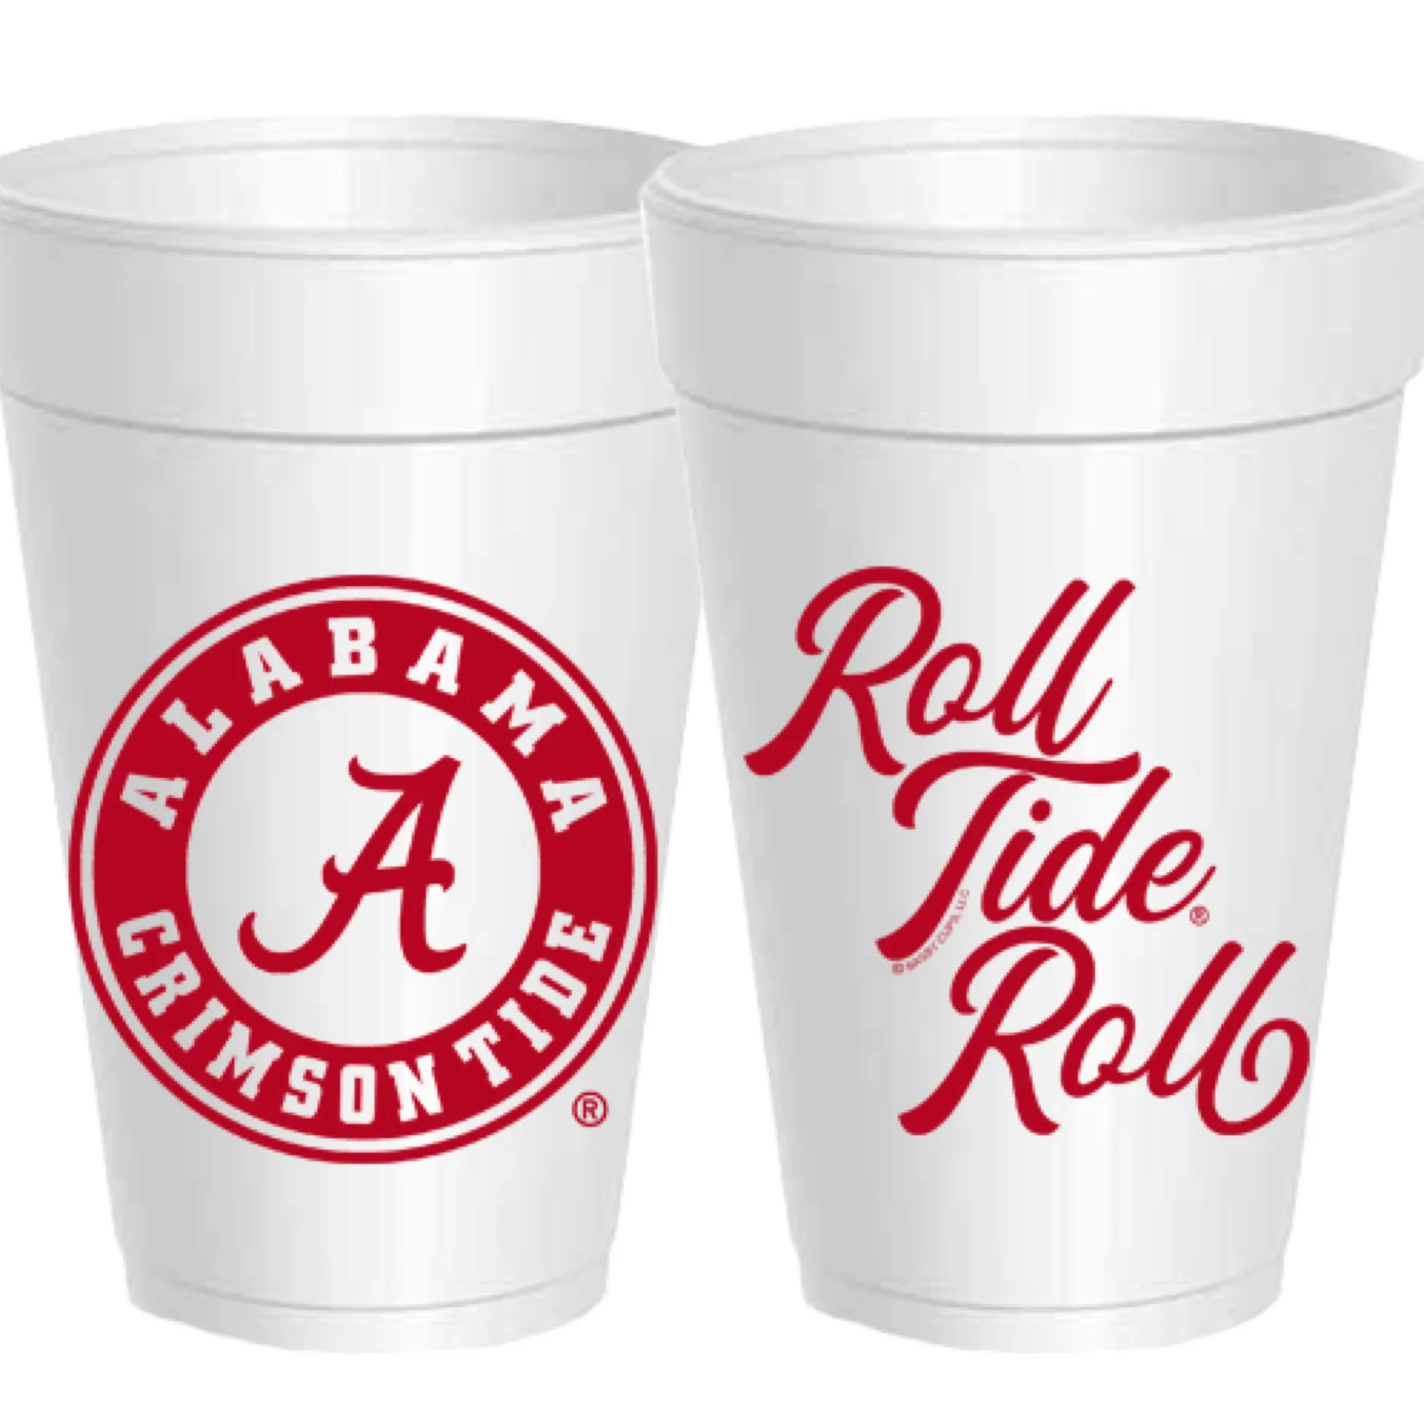 Alabama- Logo Roll Tide Roll Styrofoam Cups